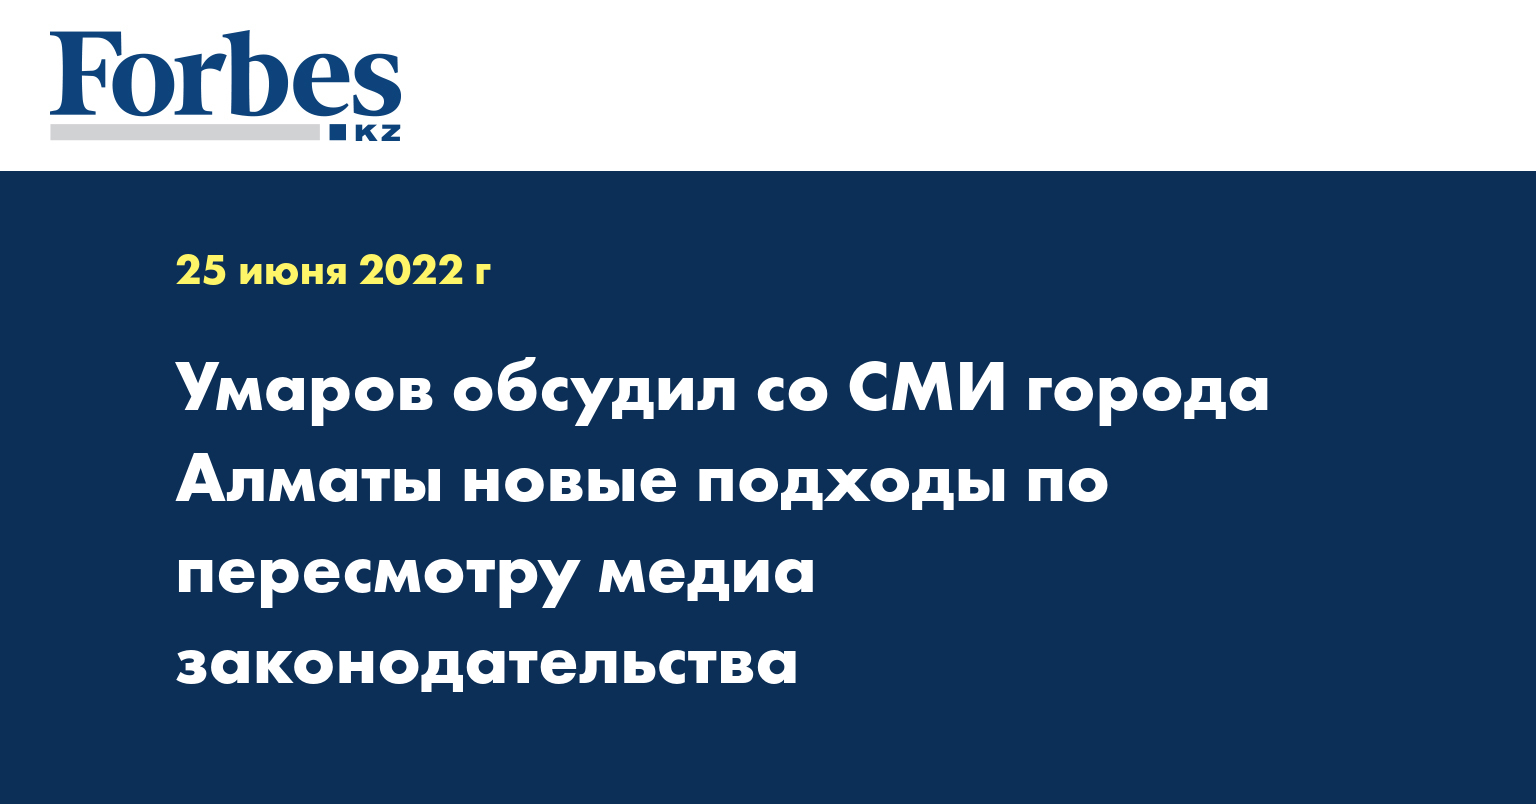 Умаров обсудил со СМИ города Алматы новые подходы по пересмотру медиа законодательства